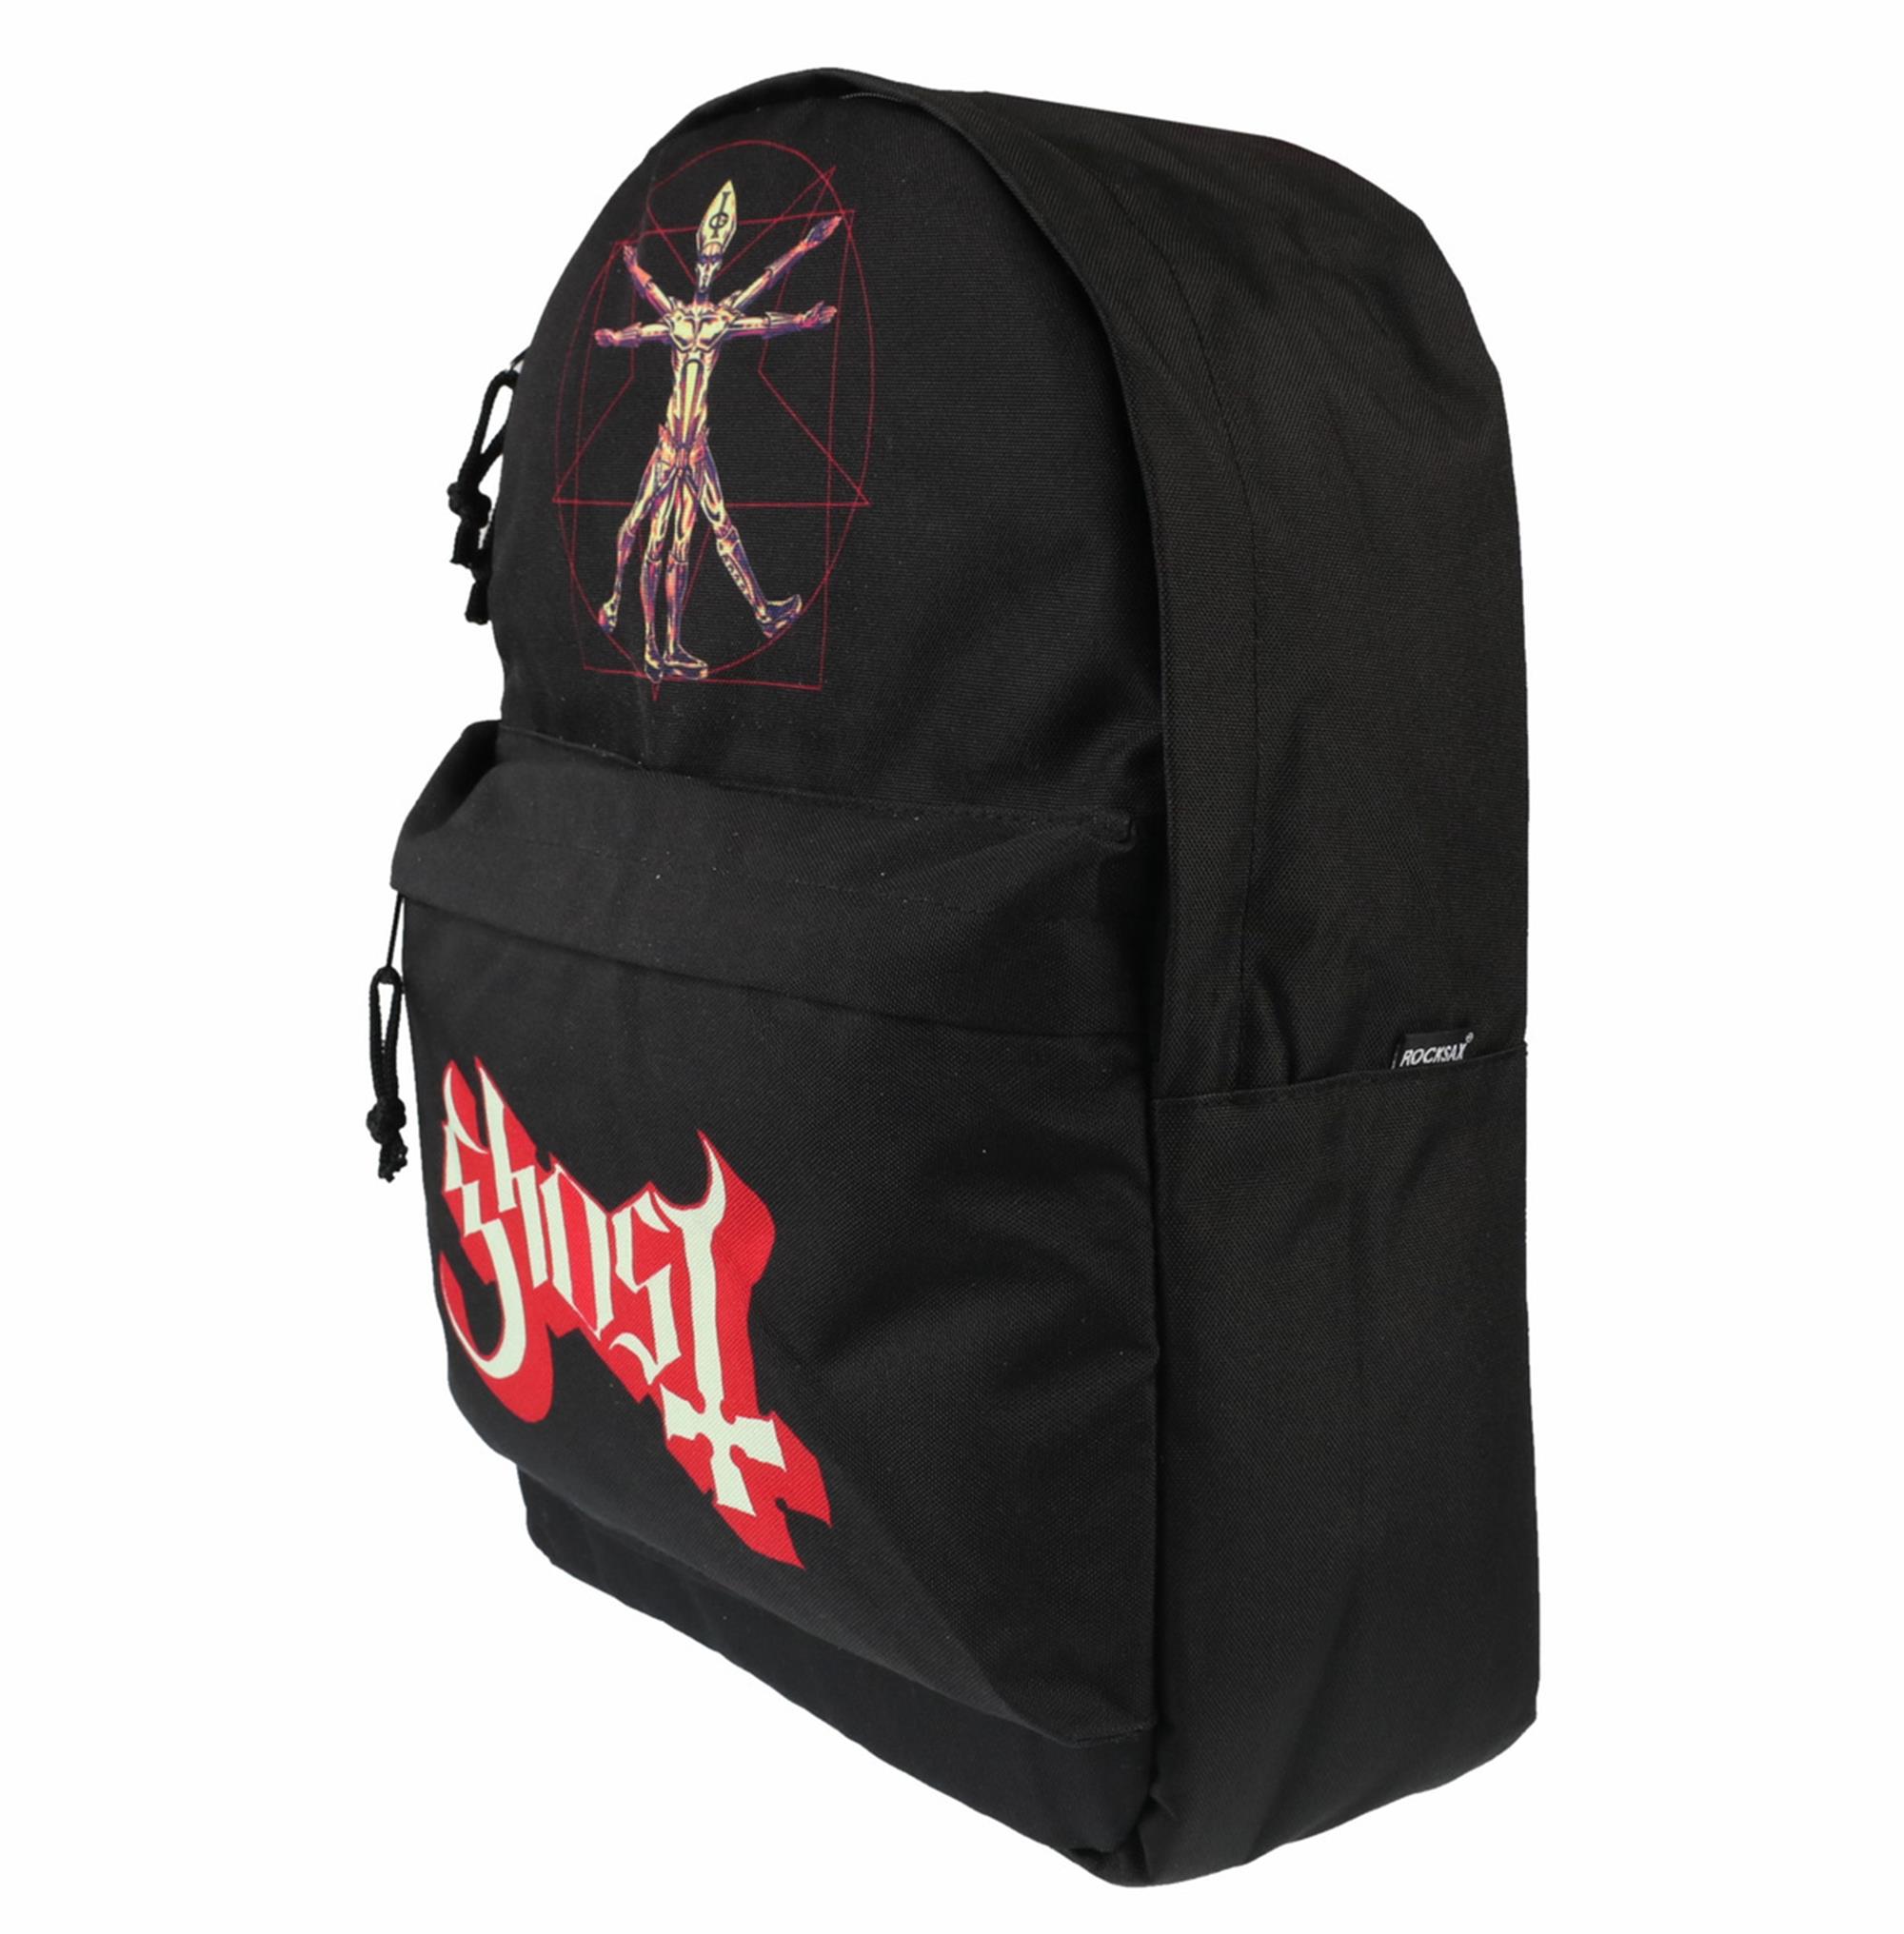 Popestar Backpack